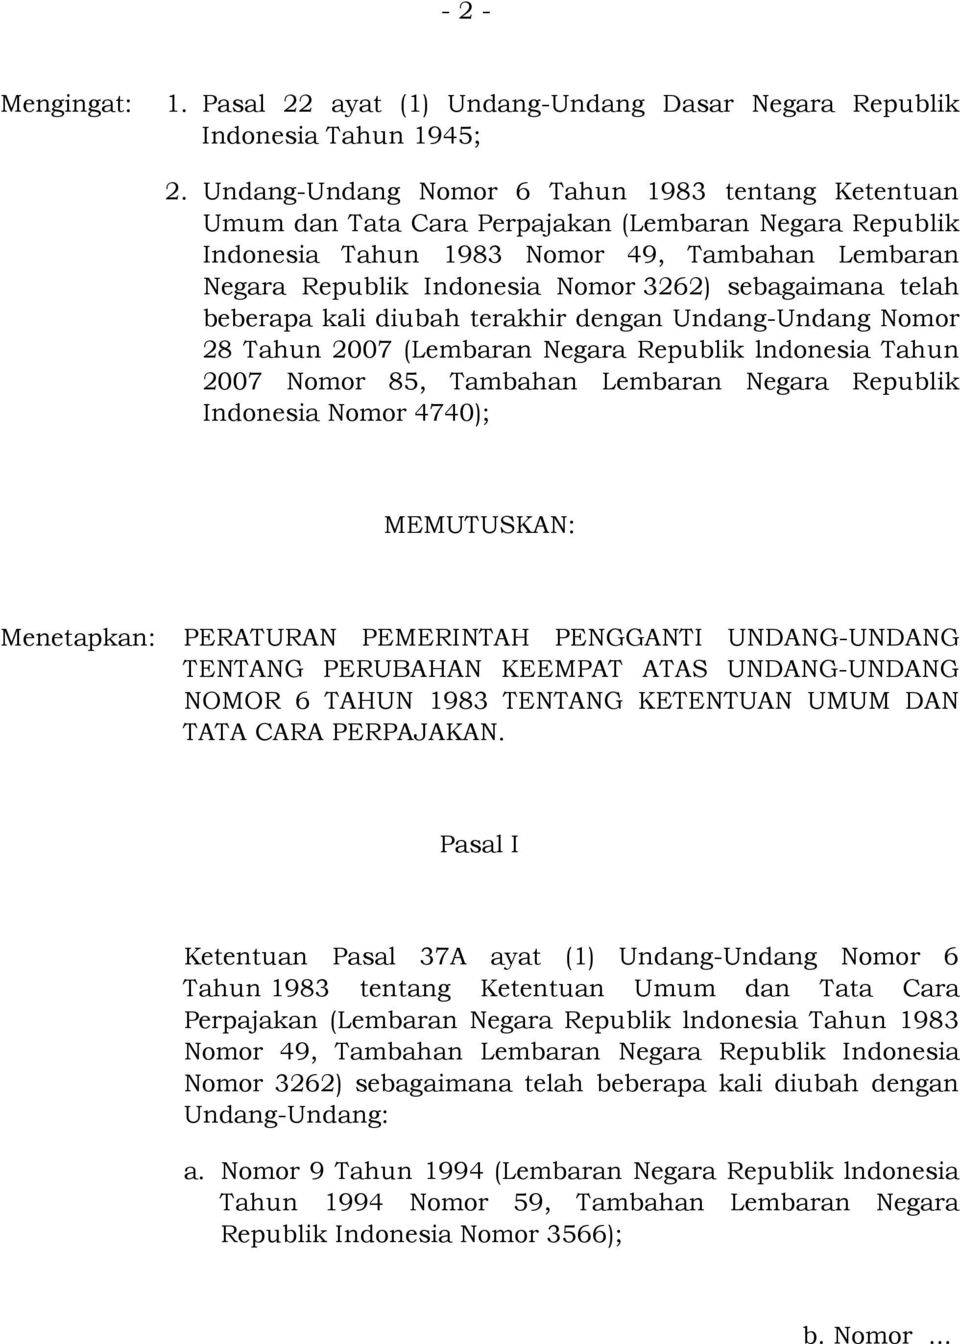 sebagaimana telah beberapa kali diubah terakhir dengan Undang-Undang Nomor 28 Tahun 2007 (Lembaran Negara Republik lndonesia Tahun 2007 Nomor 85, Tambahan Lembaran Negara Republik Indonesia Nomor